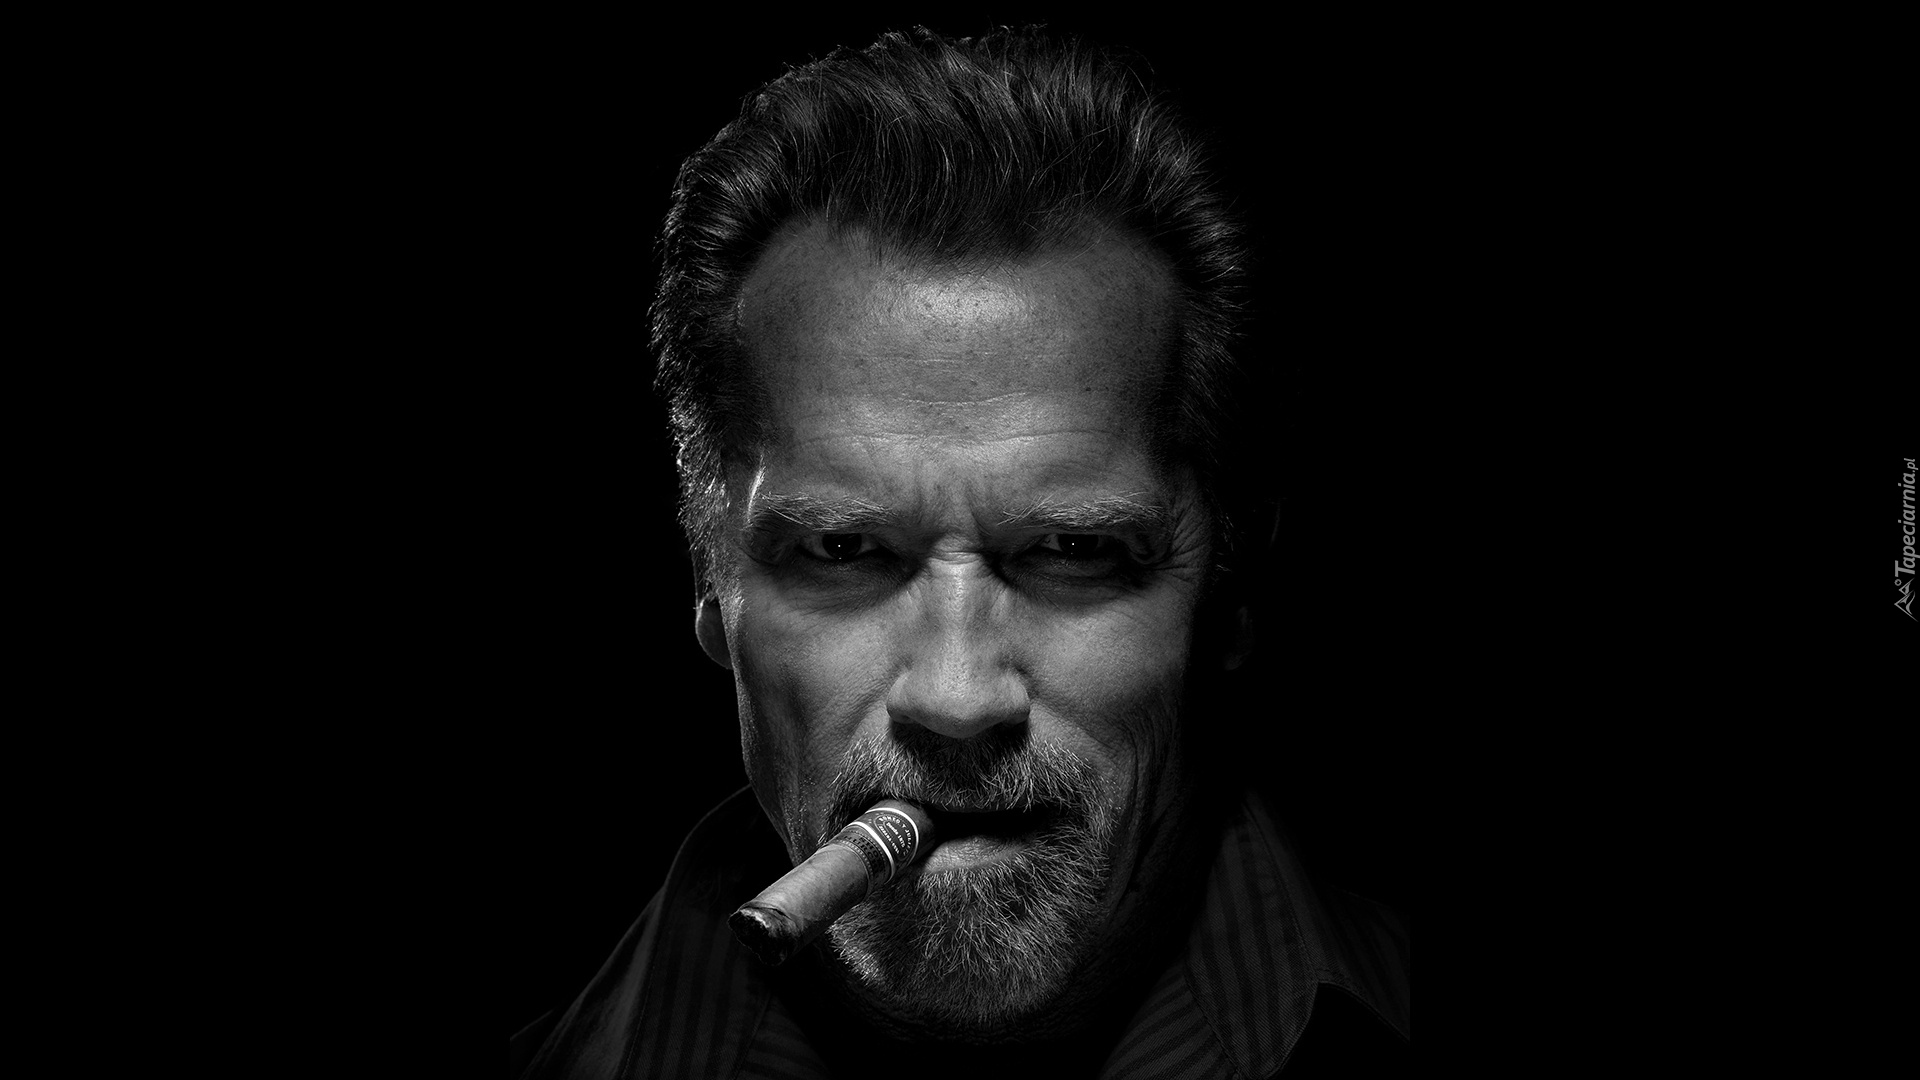 Mężczyzna, Aktor, Arnold Schwarzenegger, Cygaro